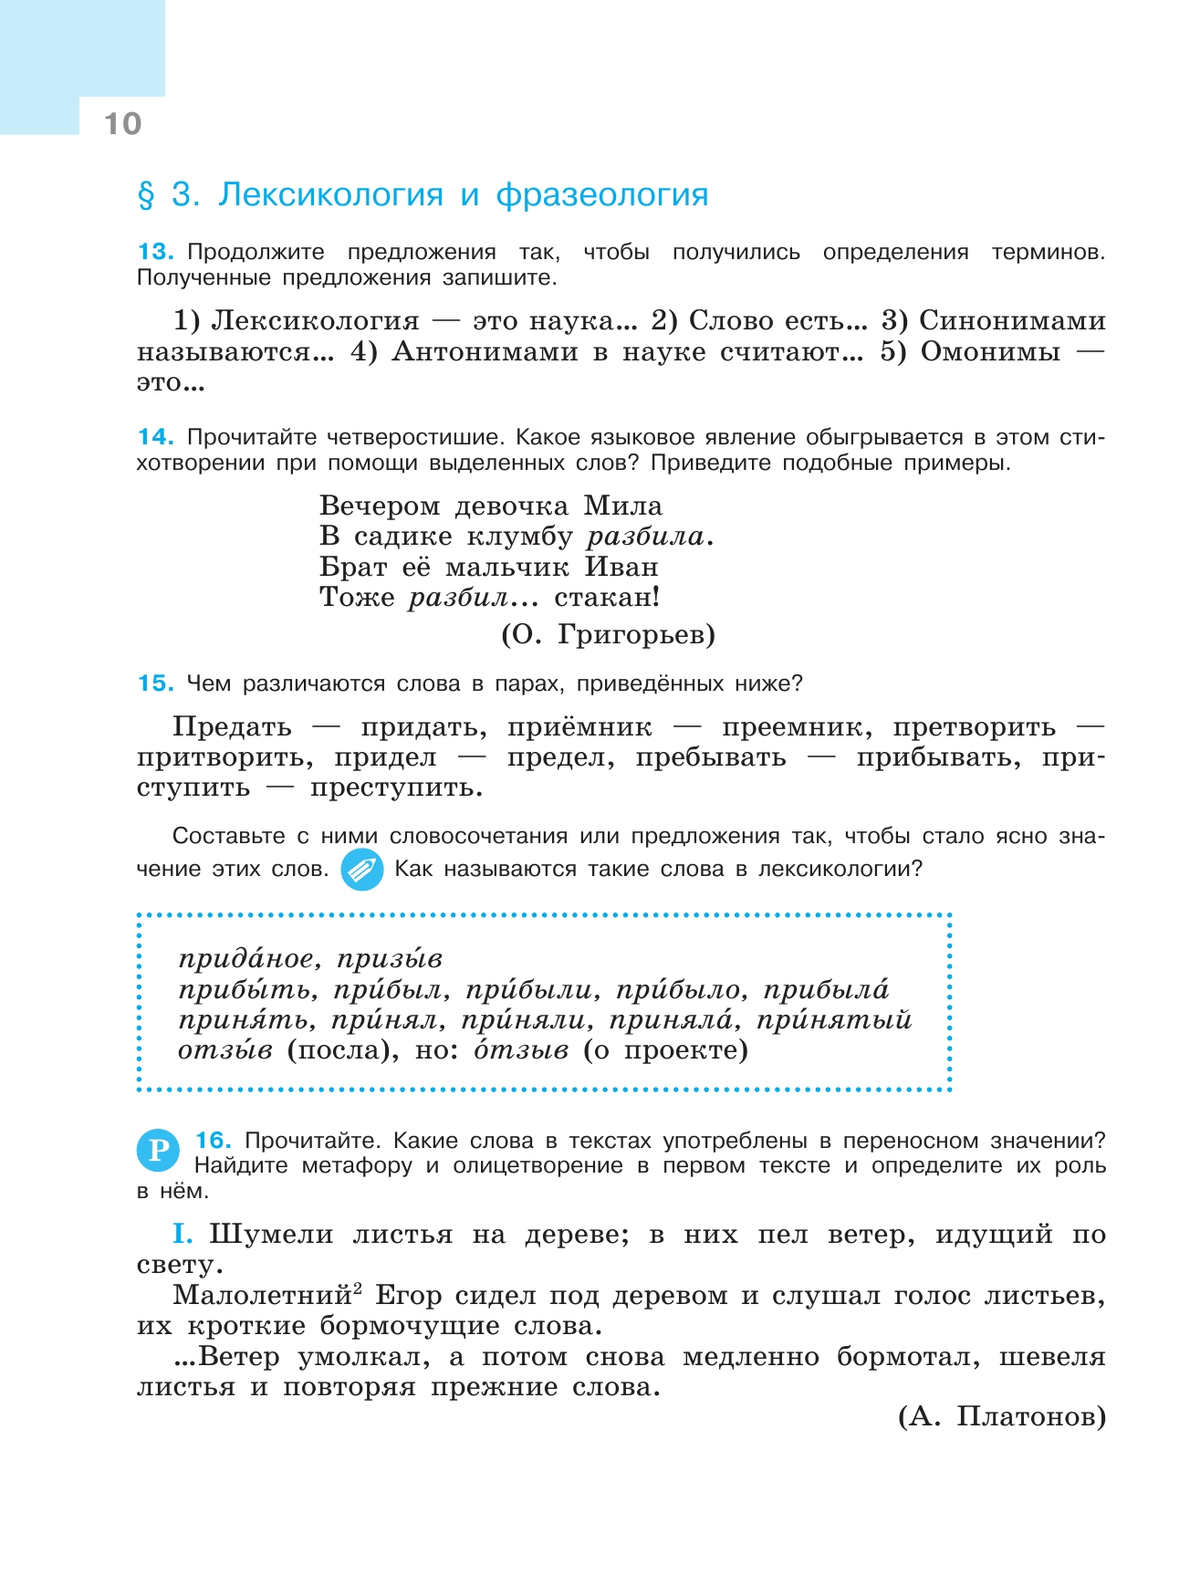 Русский язык. 9 класс. Учебник 4